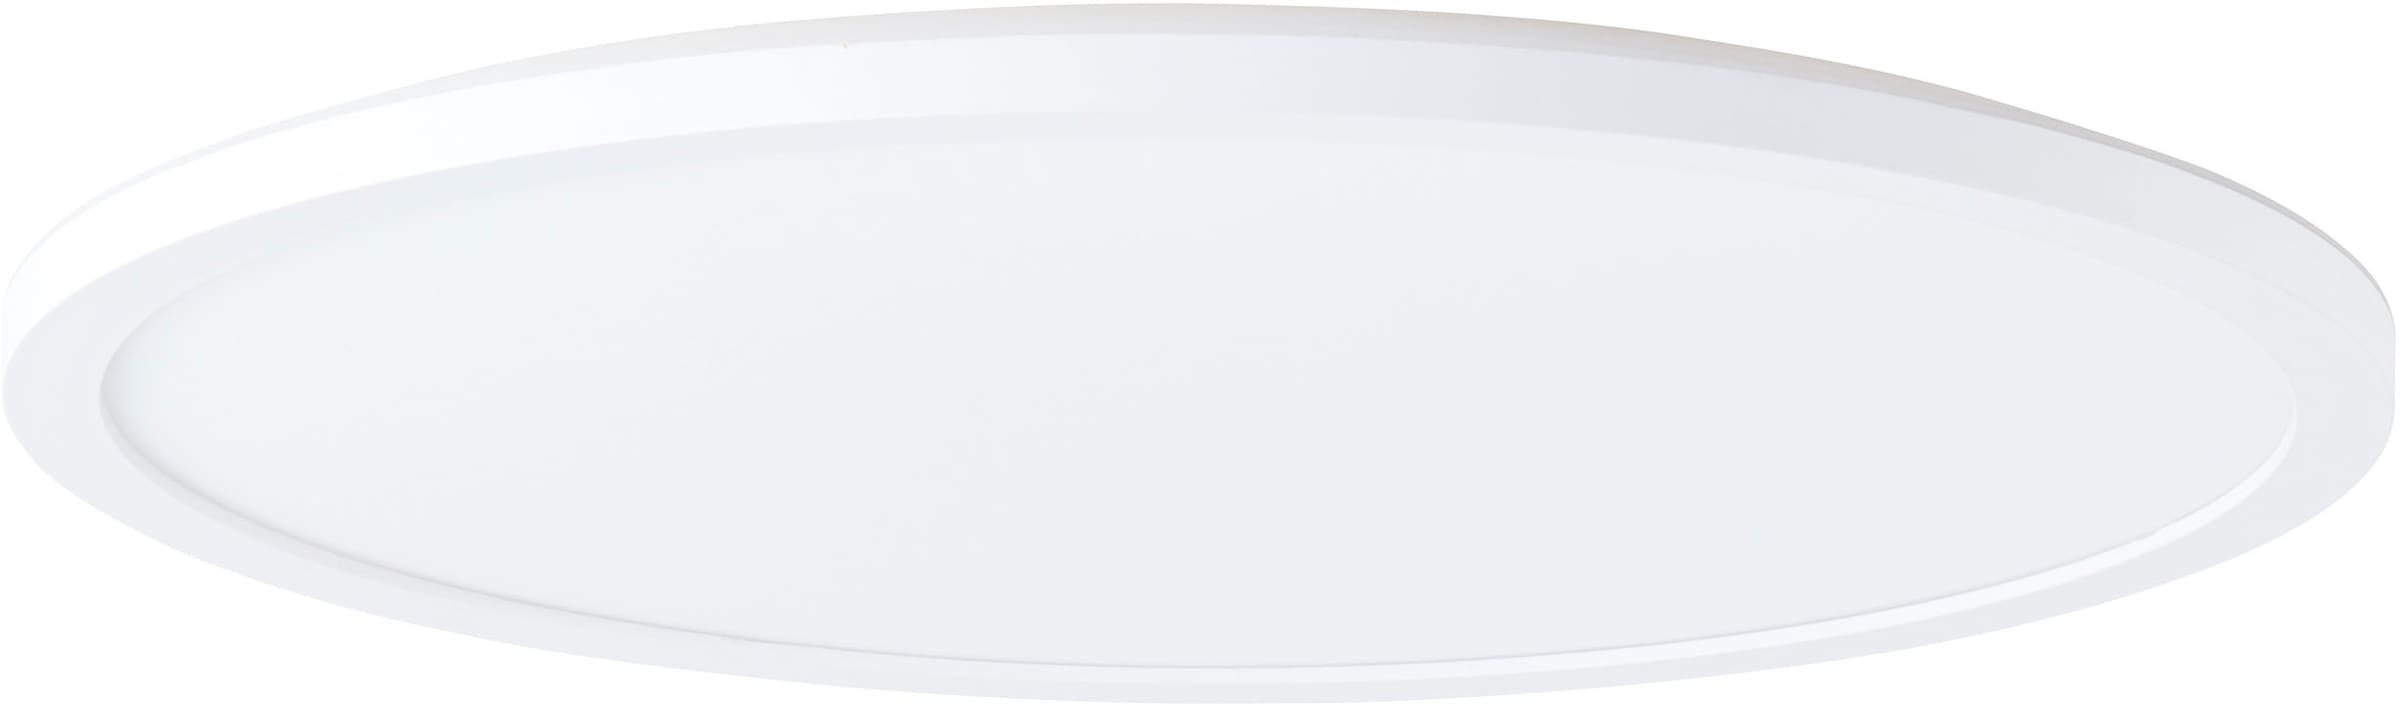 LED Deckenleuchte »Evita«, Ø 42 cm, 3400 Lumen, 4000 Kelvin, weiß